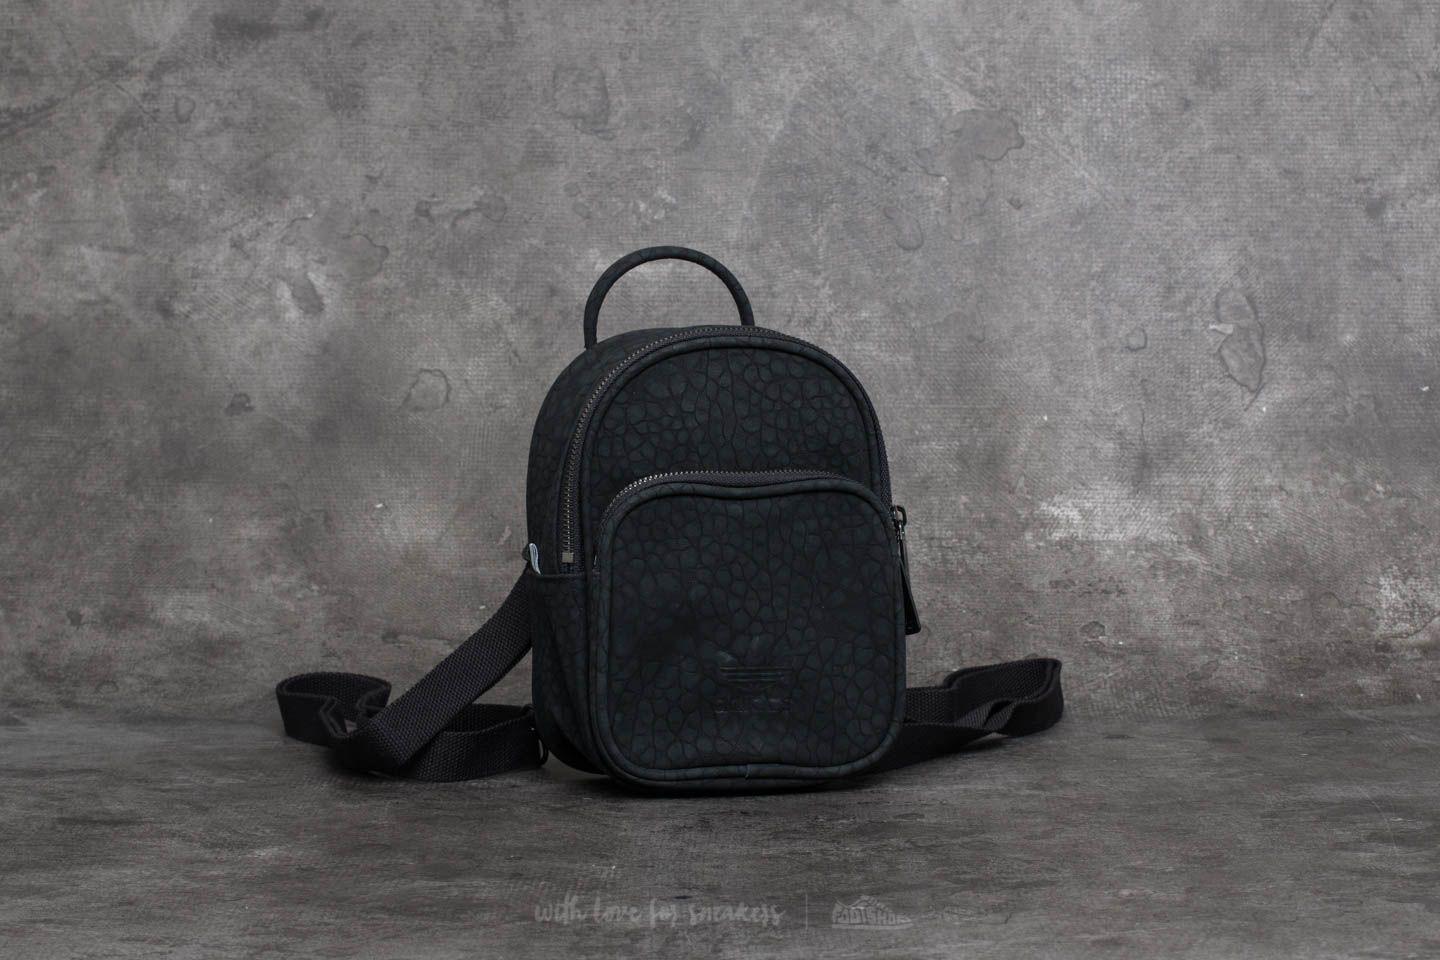 adicolor mini faux leather backpack